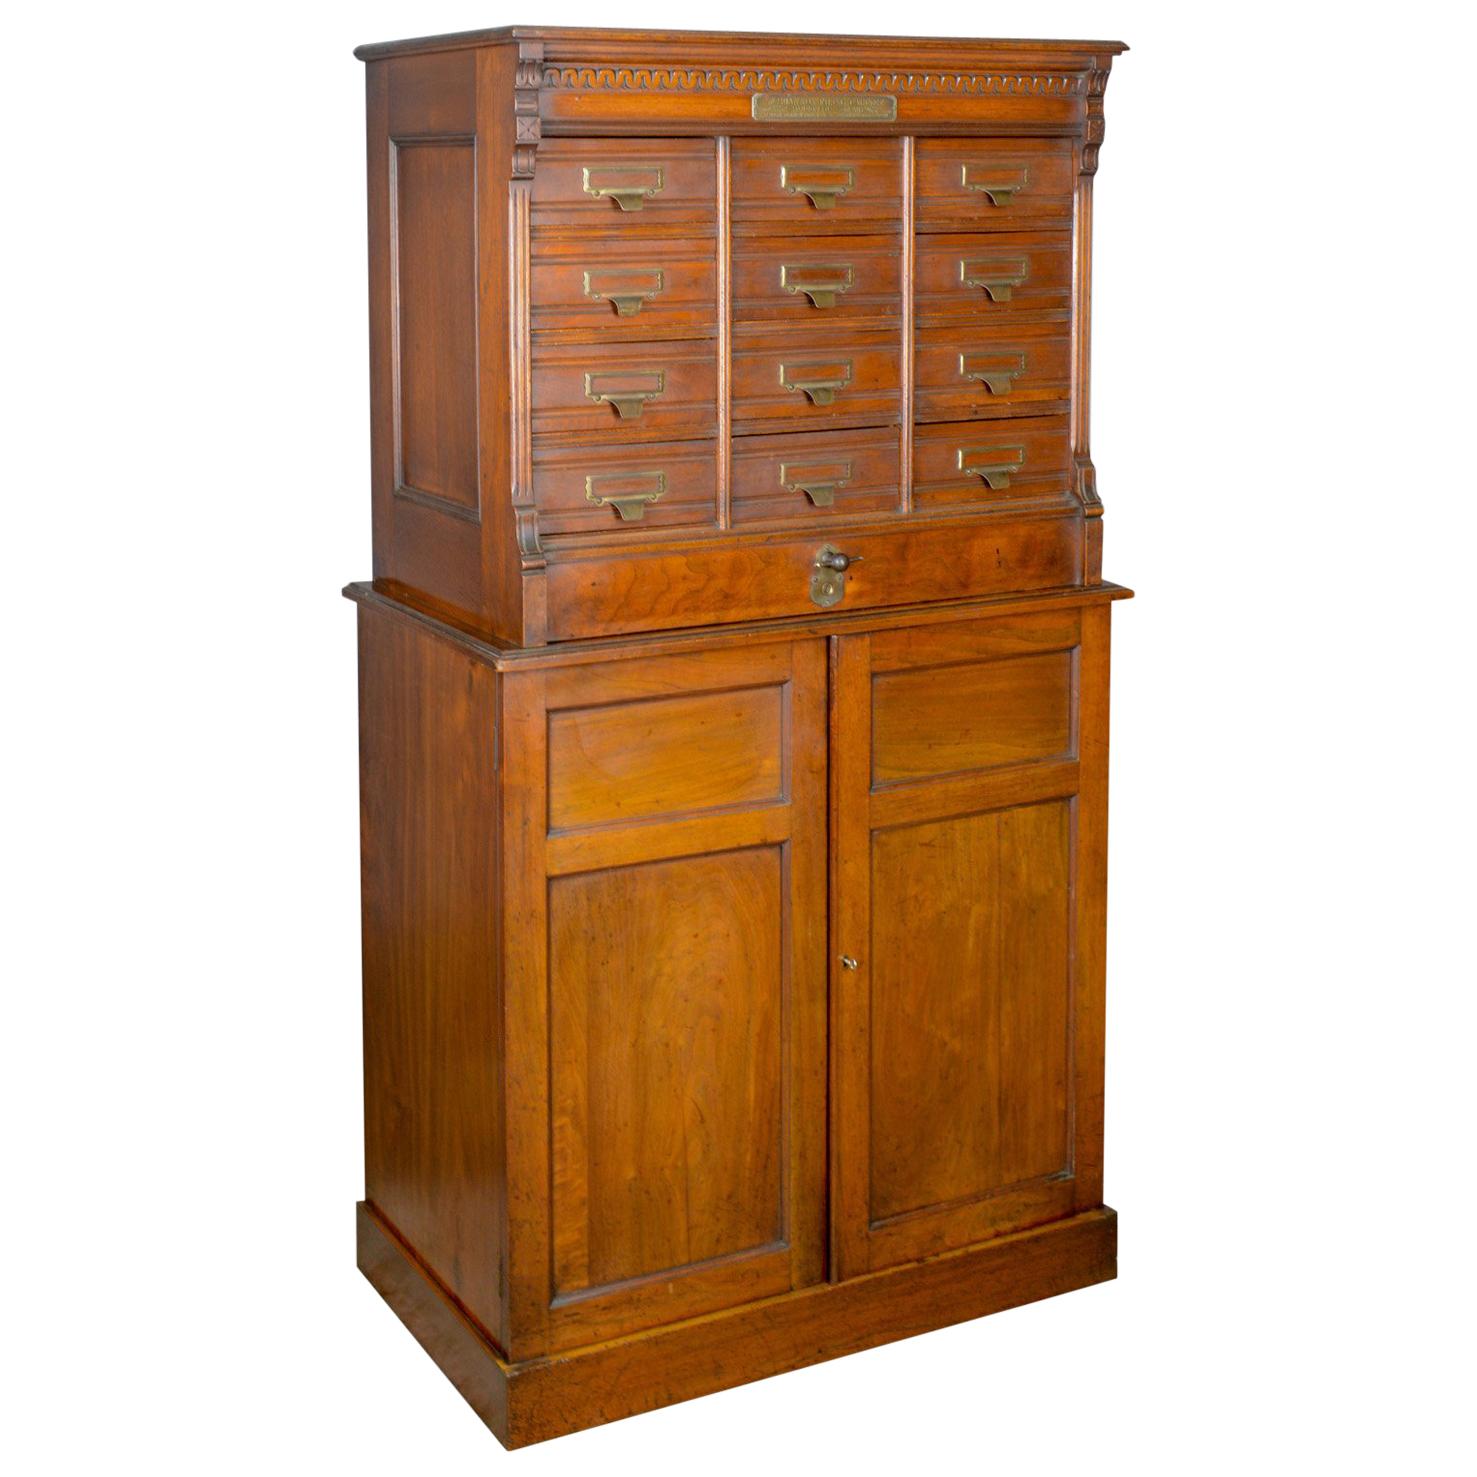 Large Antique Filing Cabinet, English, Edwardian, Walnut, Shannon File Co.